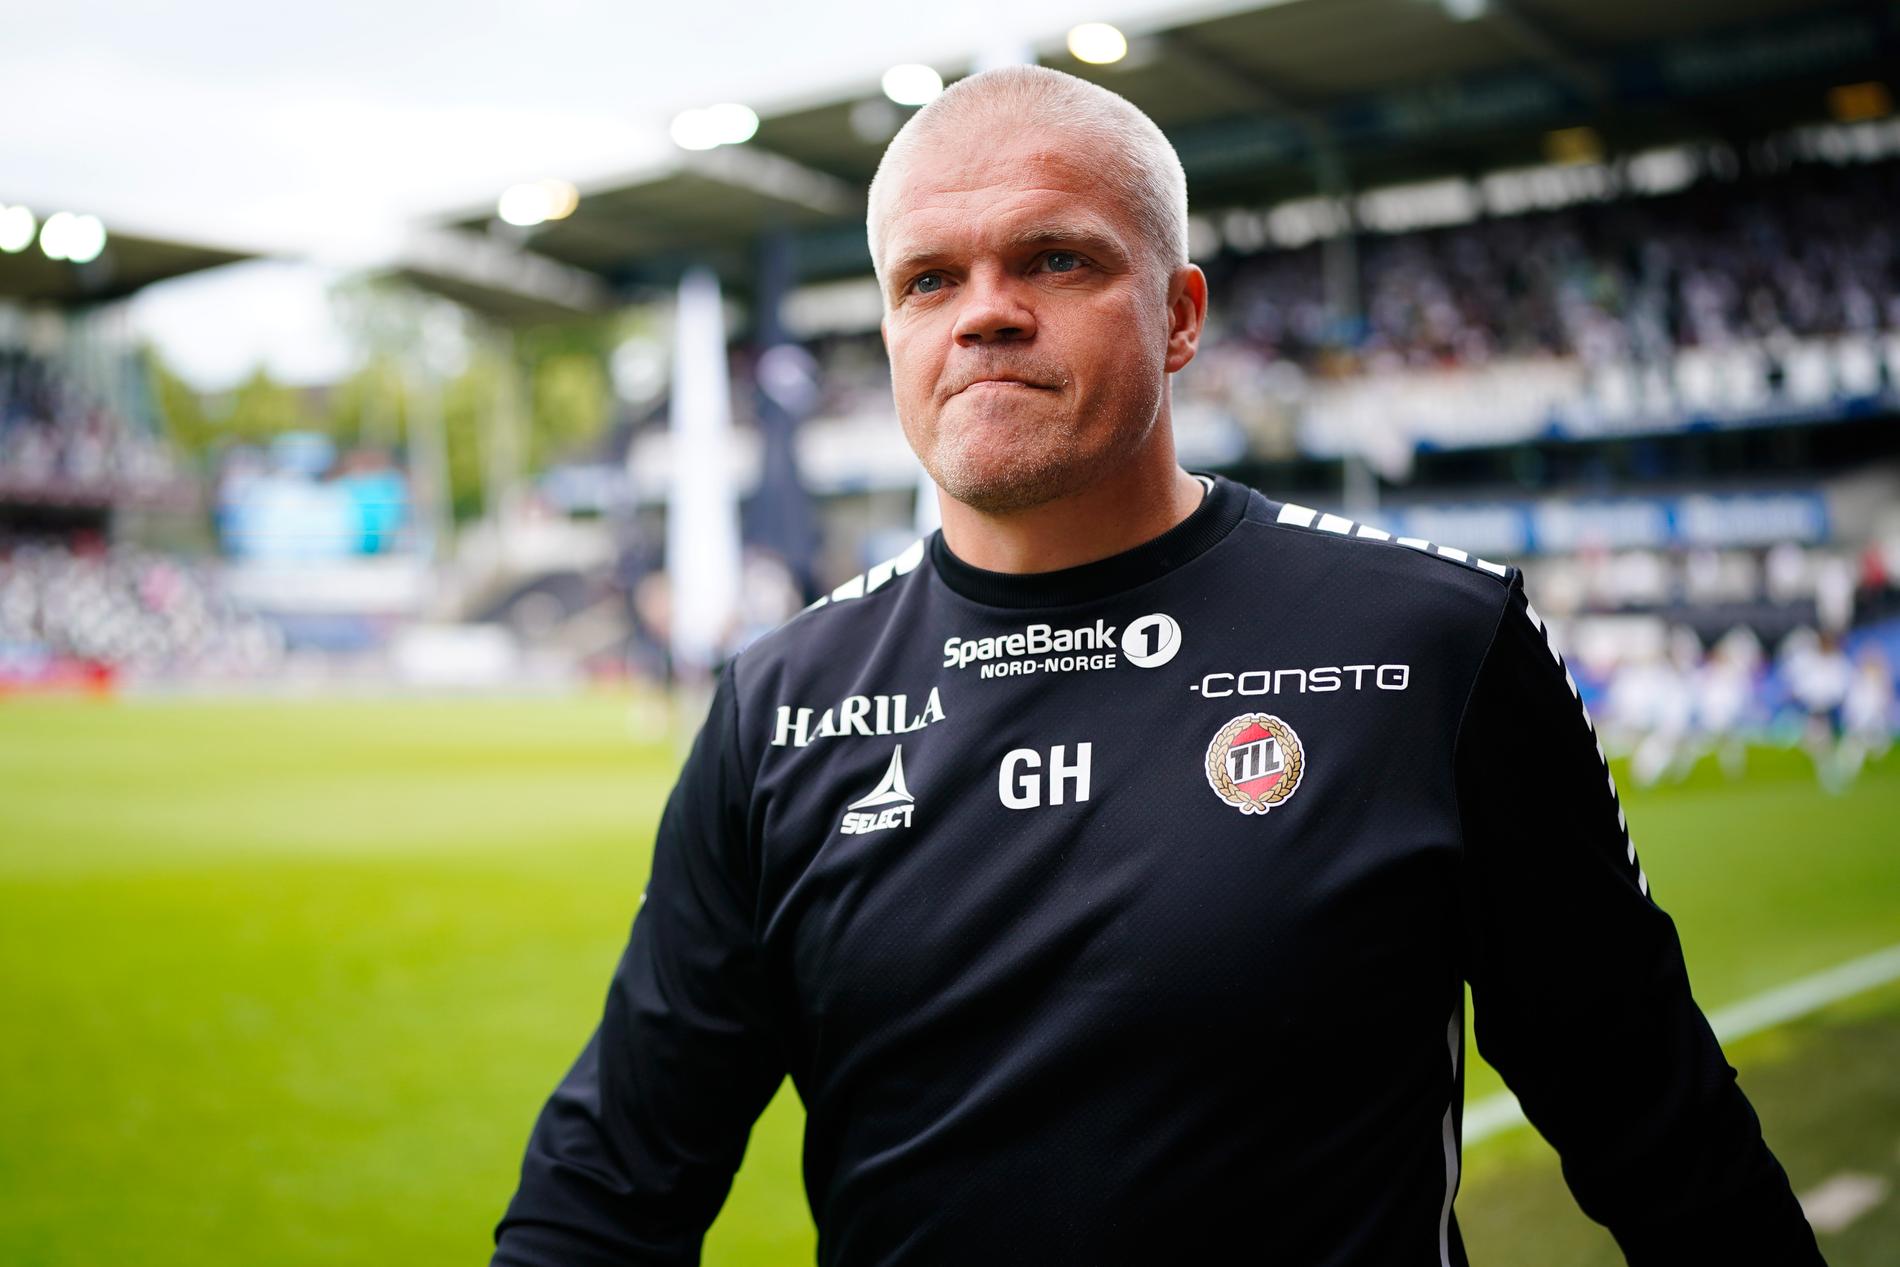 Eliteserien: Gaute Helstrup runs with Tromsø IL